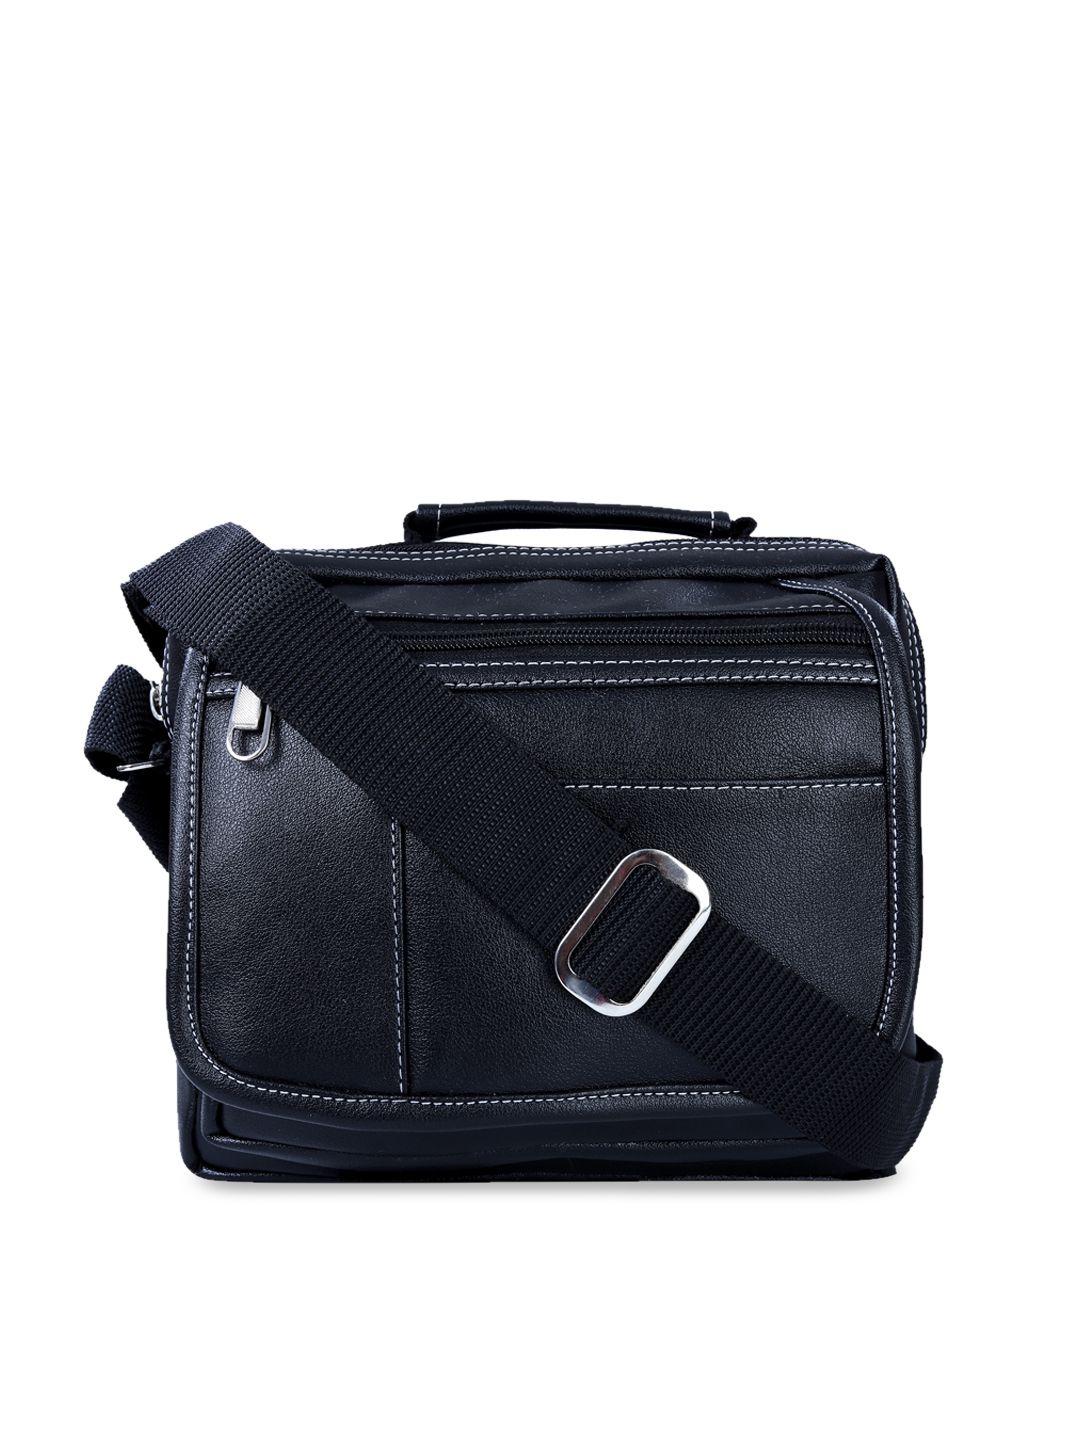 leather world unisex black solid messenger bag